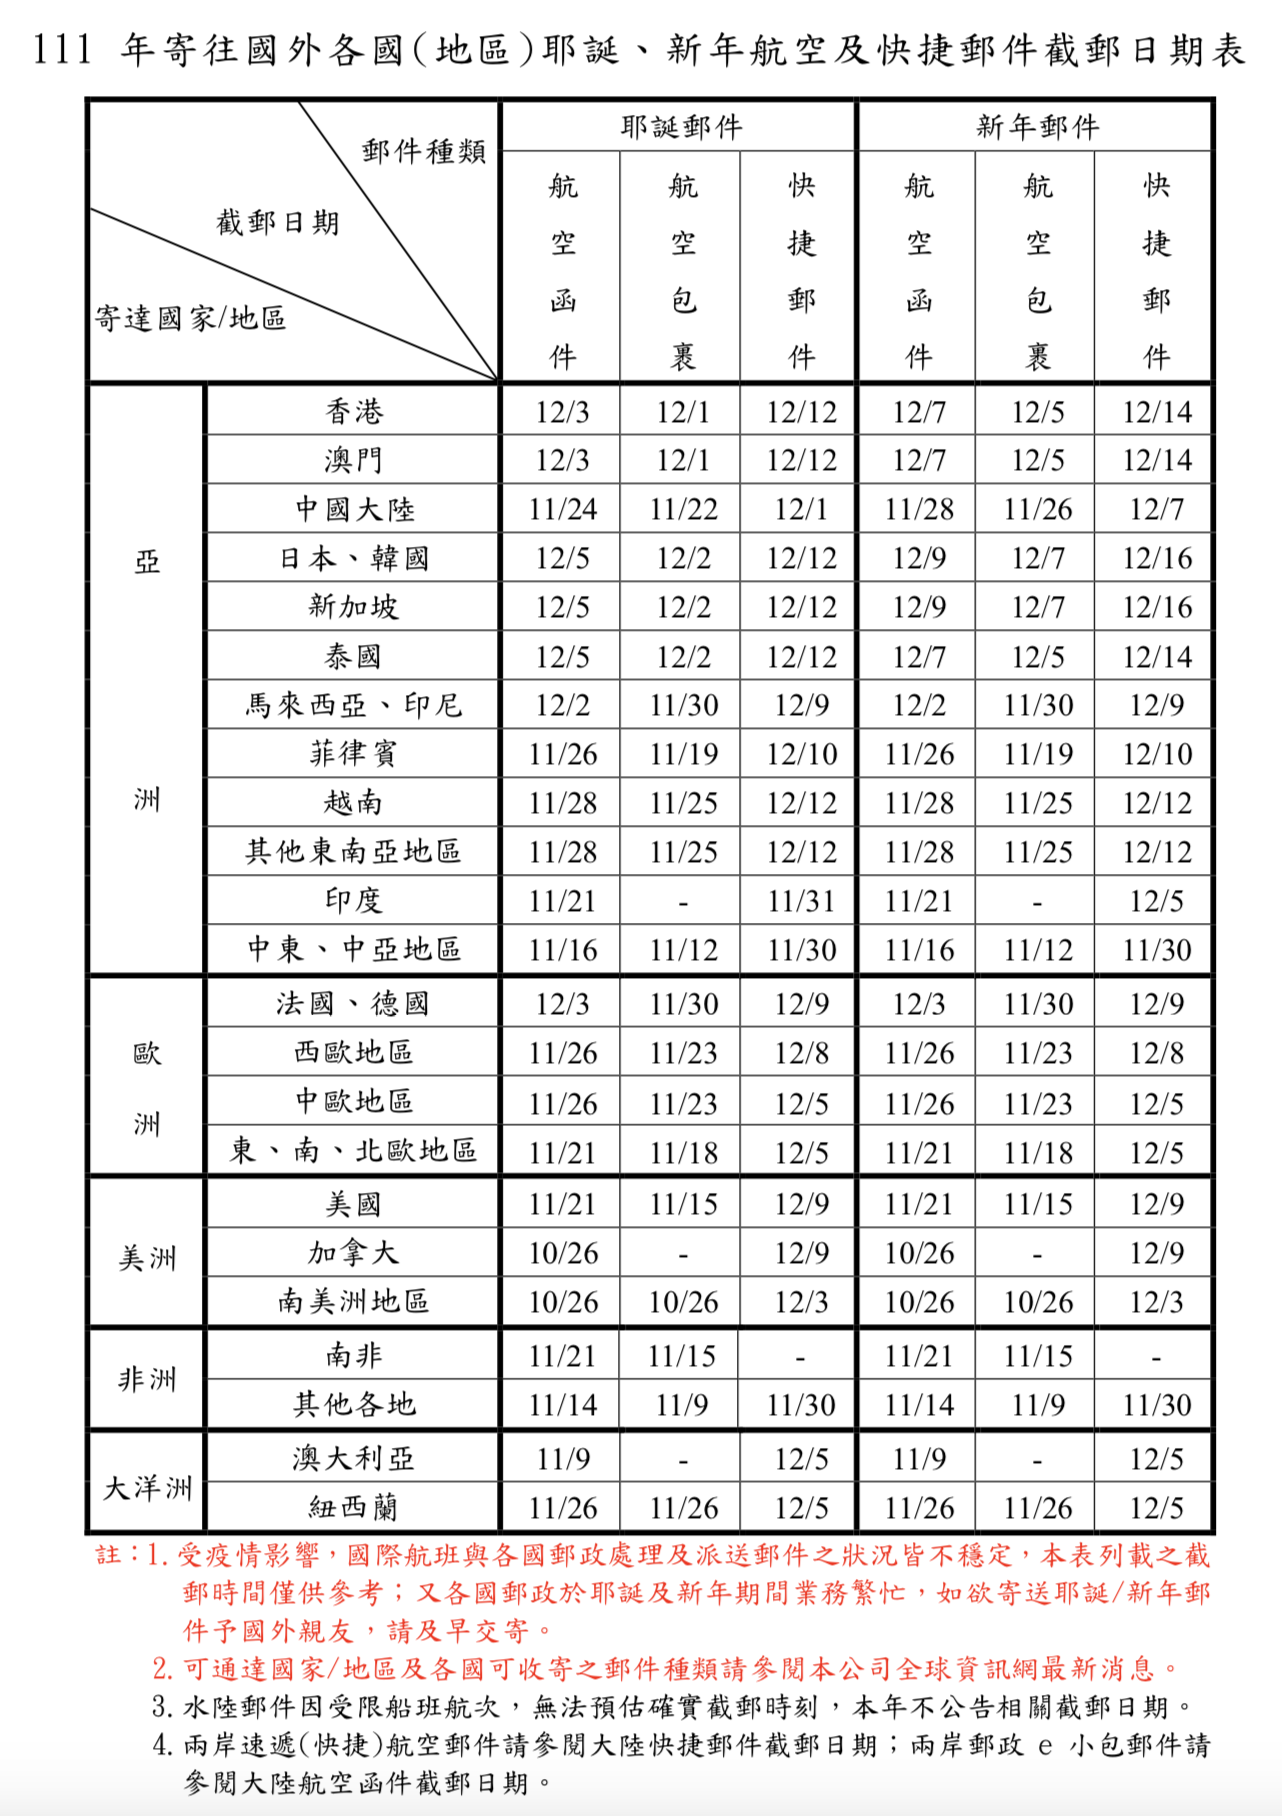 中華郵政截郵日期表